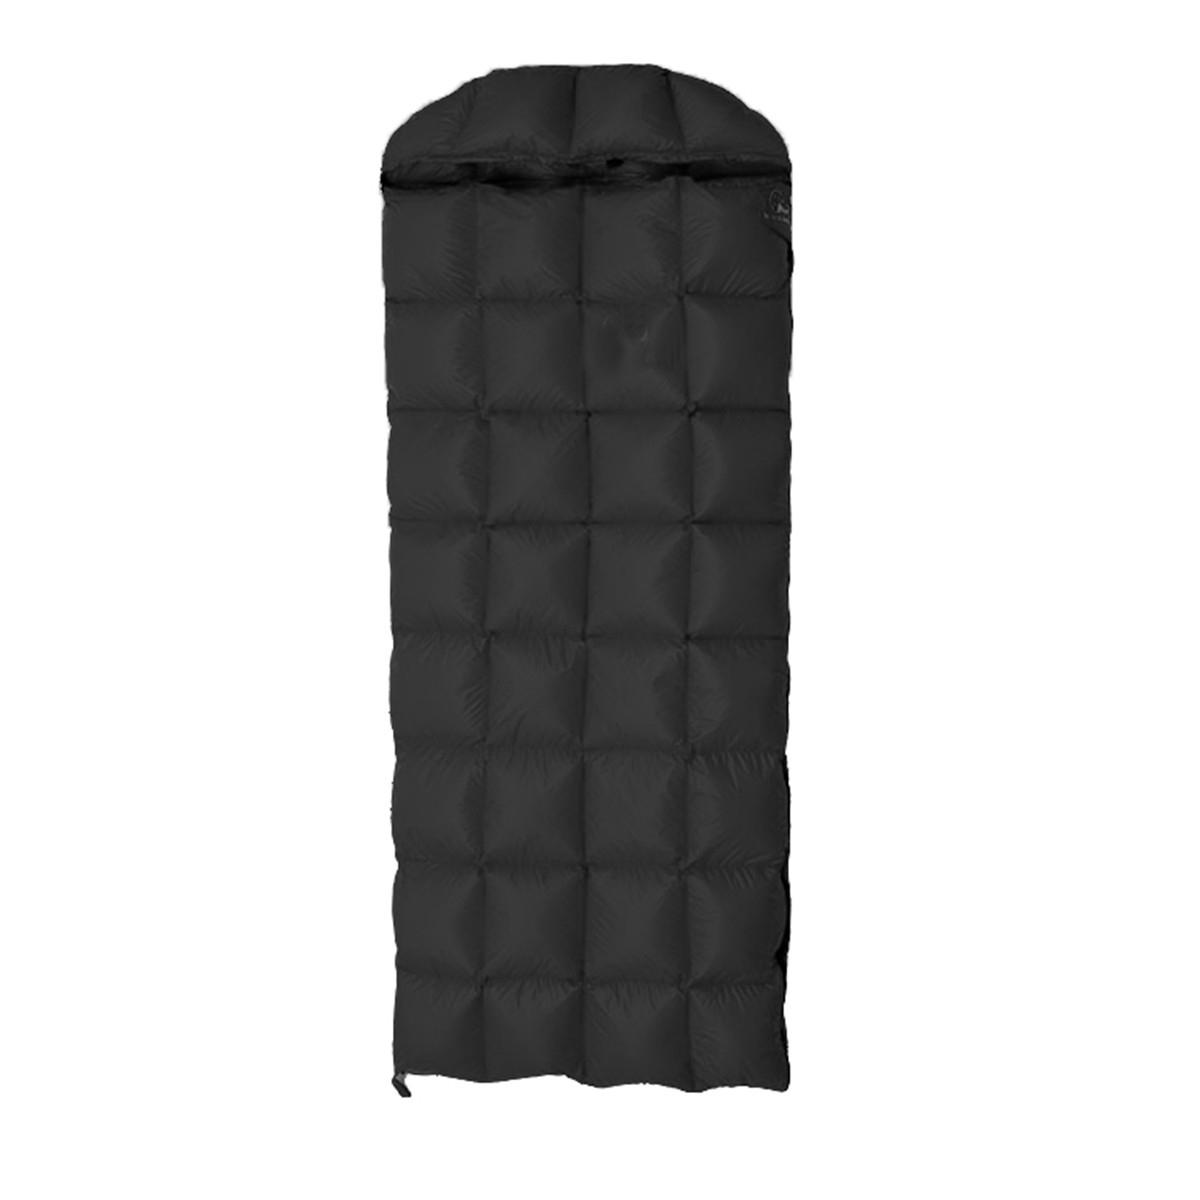 軽量のアダルトバックパック用ガチョウダウン寝袋、キャンプや旅行に最適